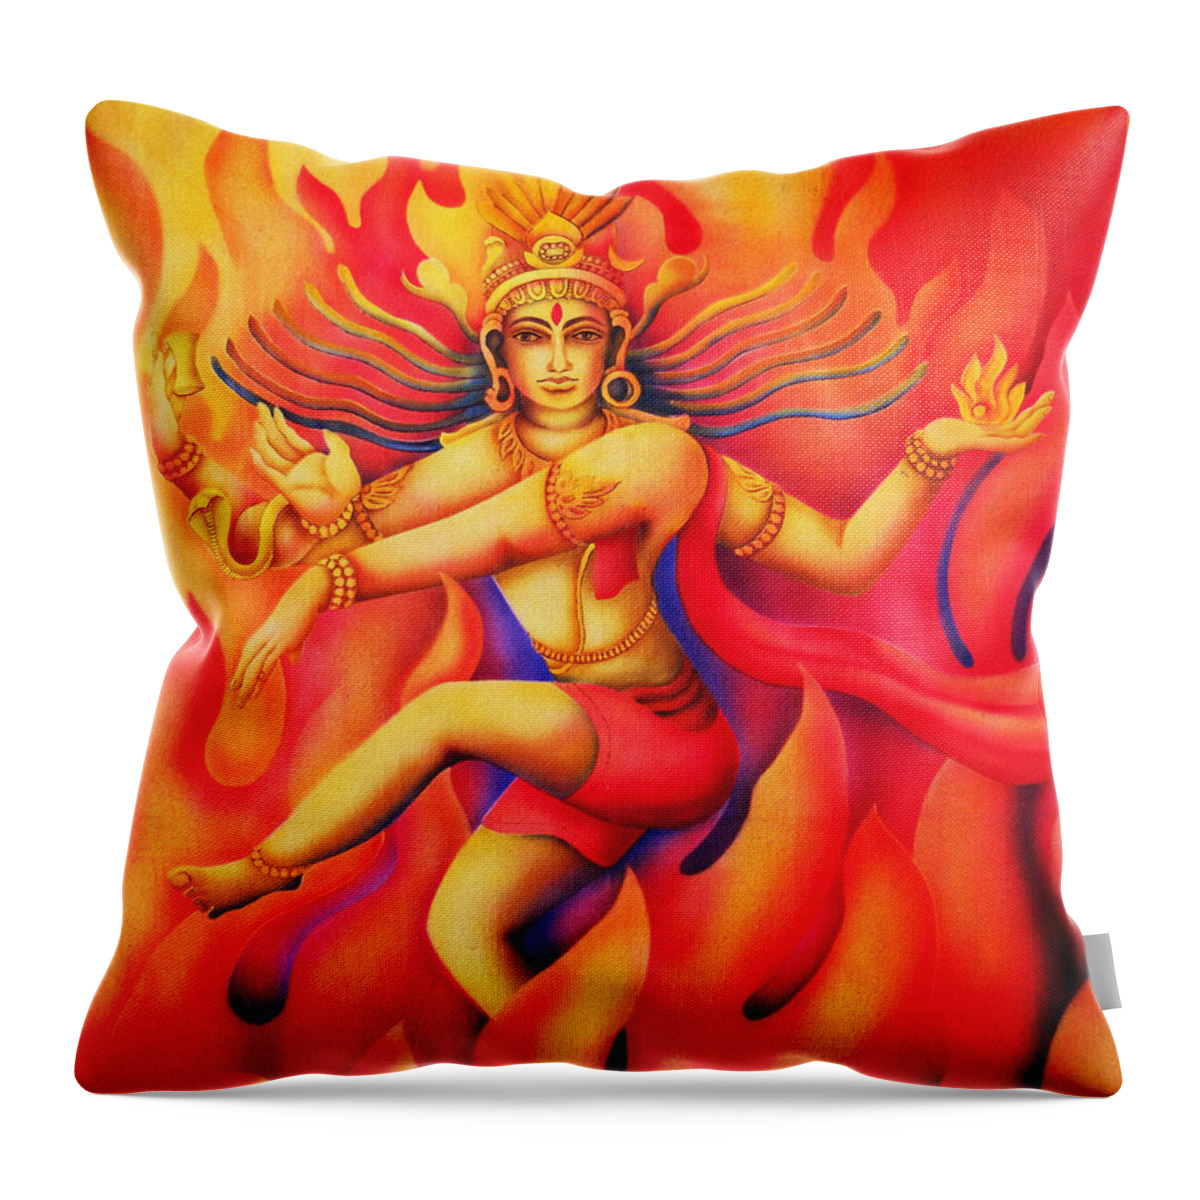 Shiva Throw Pillow featuring the painting Shiva Nataraja by Vishwajyoti Mohrhoff